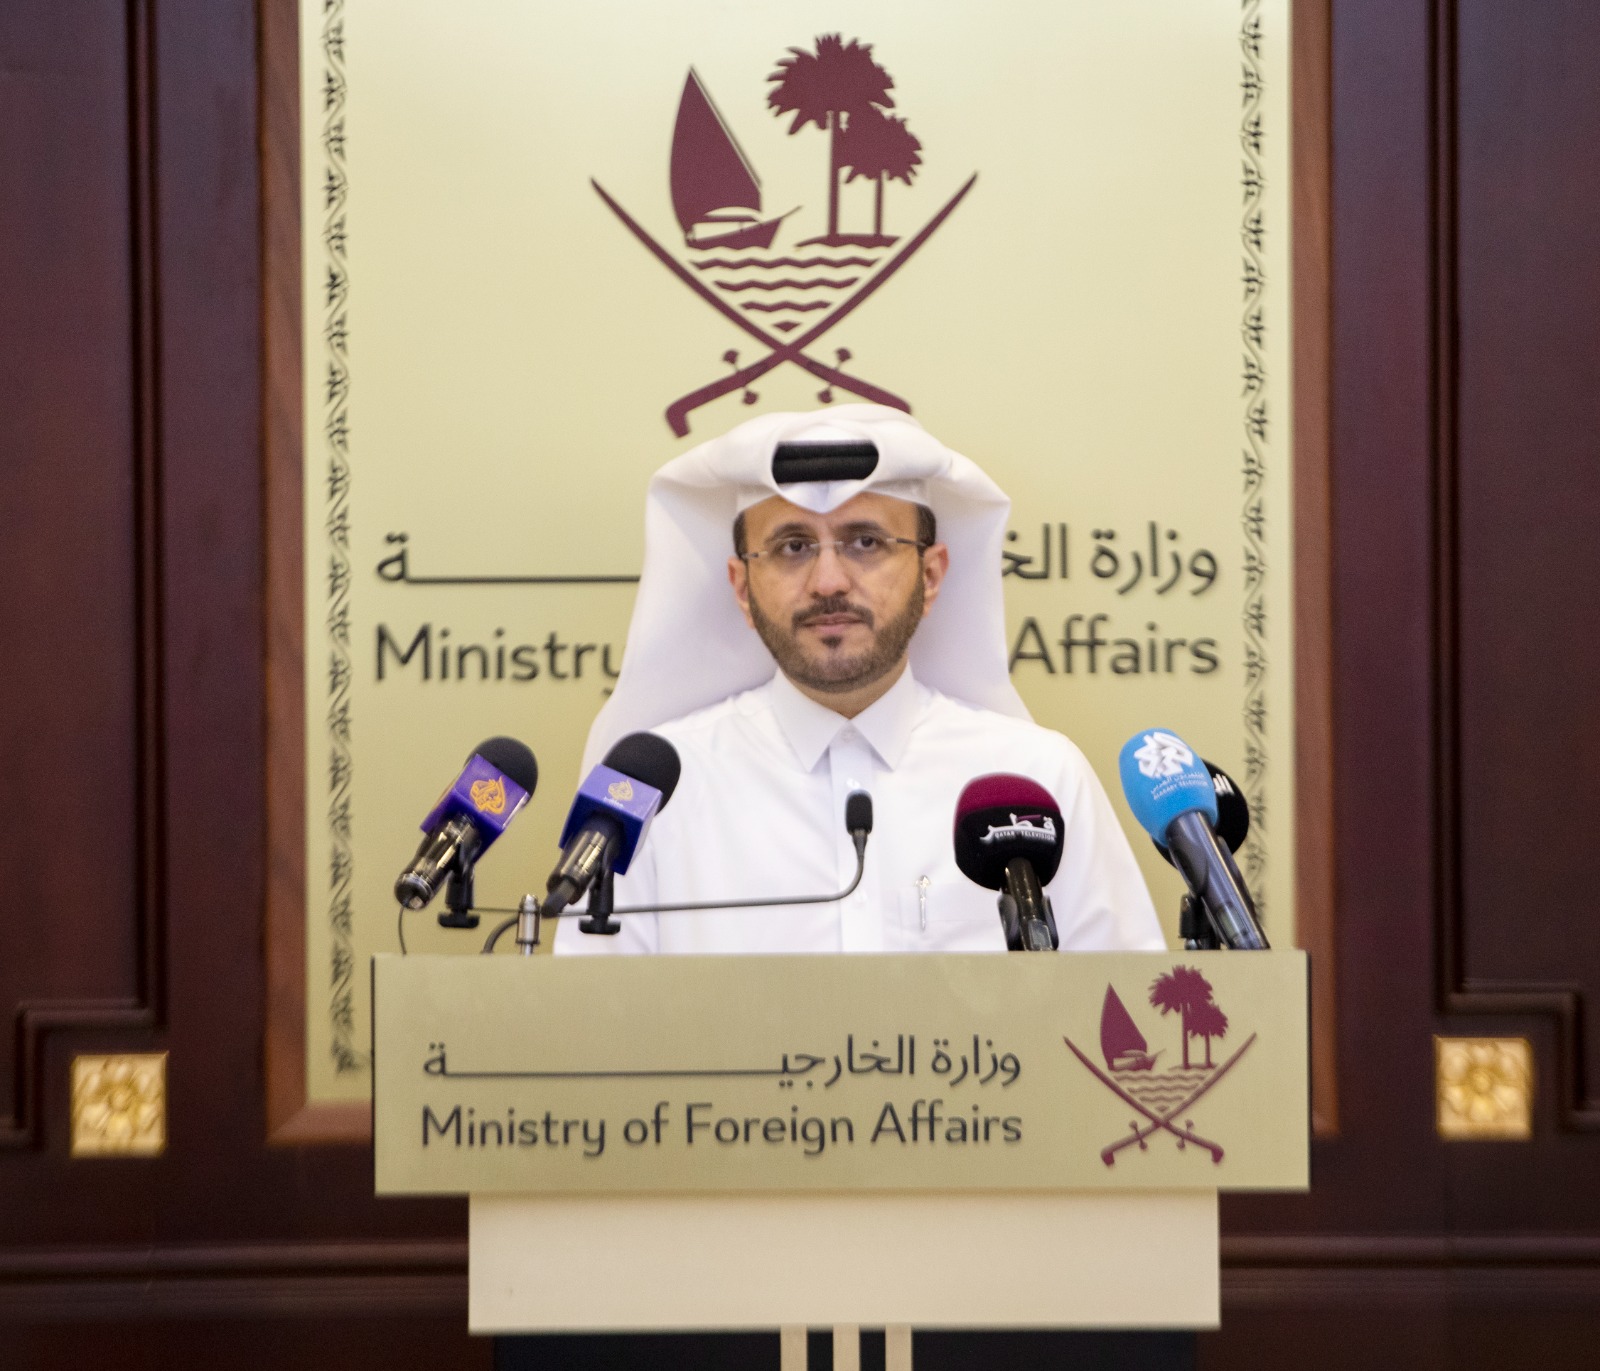 المتحدث الرسمي لوزارة الخارجية: قطر مستعدة لاستقبال شركائها الدوليين في مؤتمر 